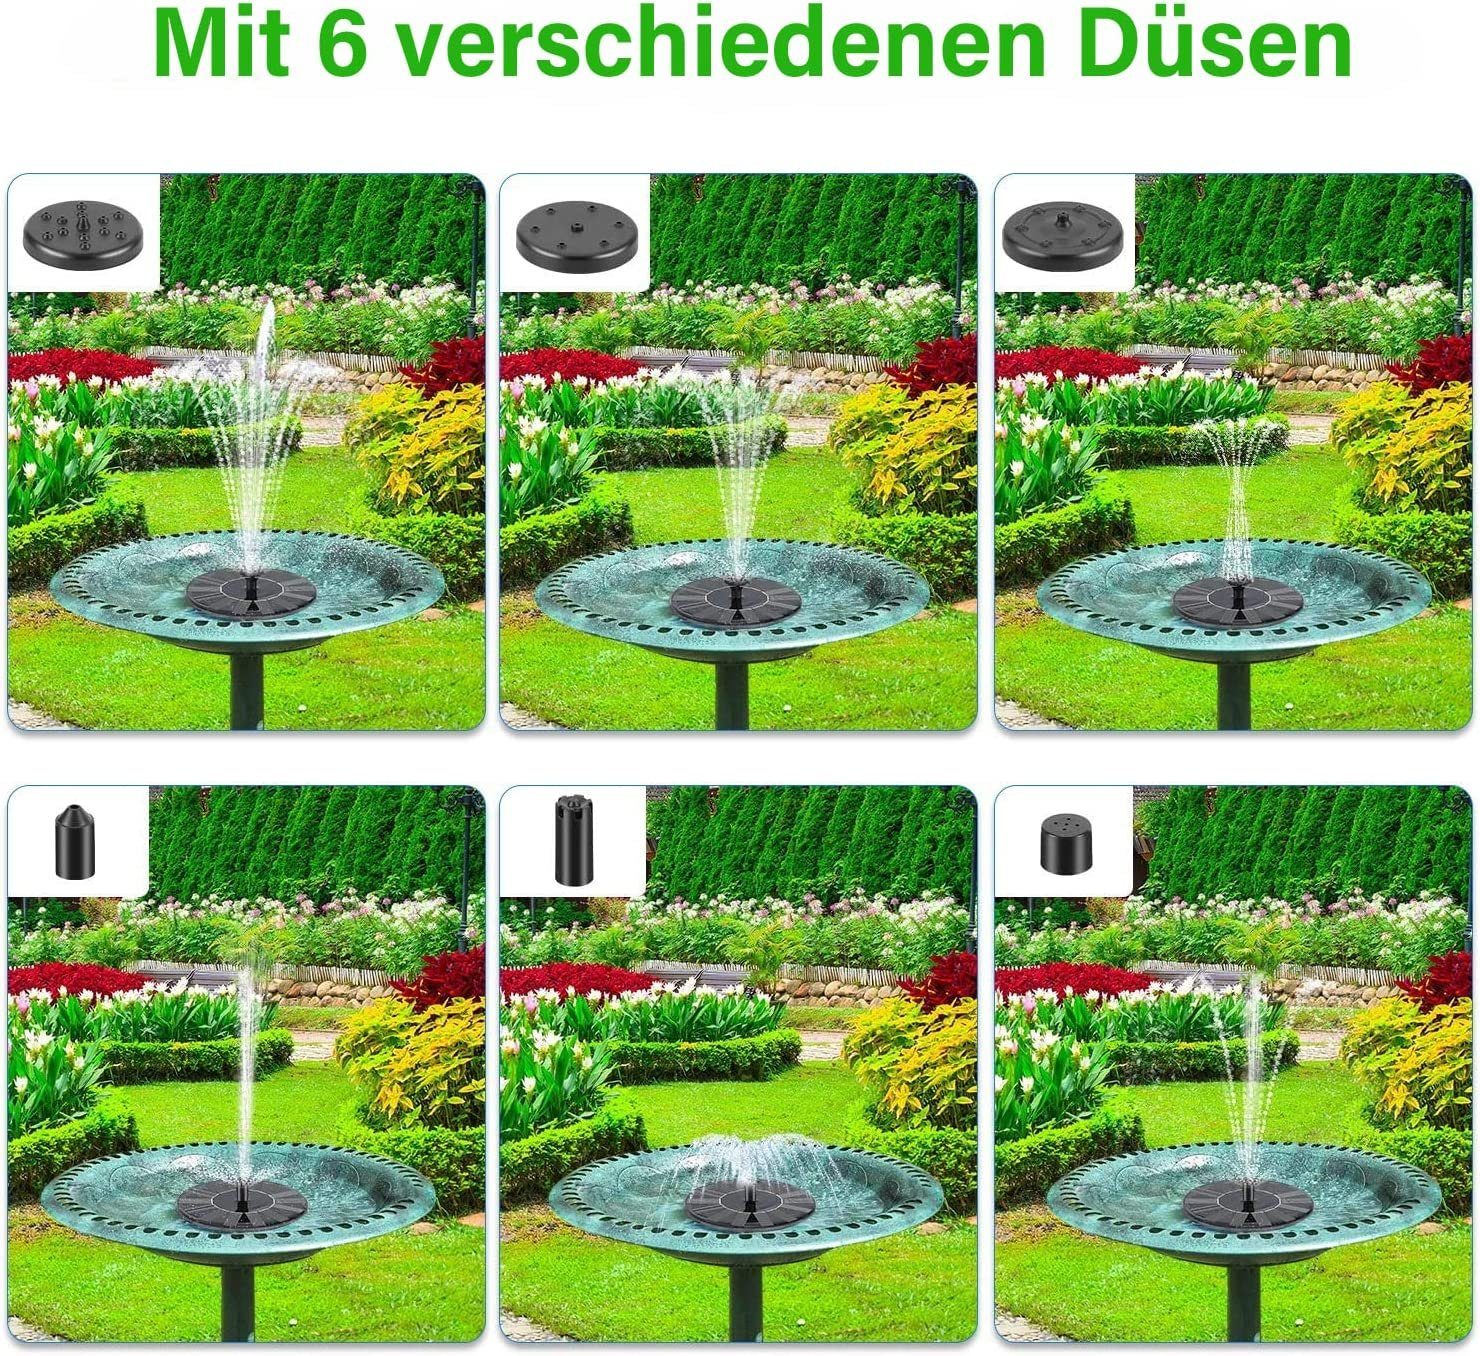 Welikera Gartenbrunnen 1.2W-Solar Außen,6 Teichpumpe (6 Nozzle, Springbrunnen,Solarbrunnen,Solar tlg)